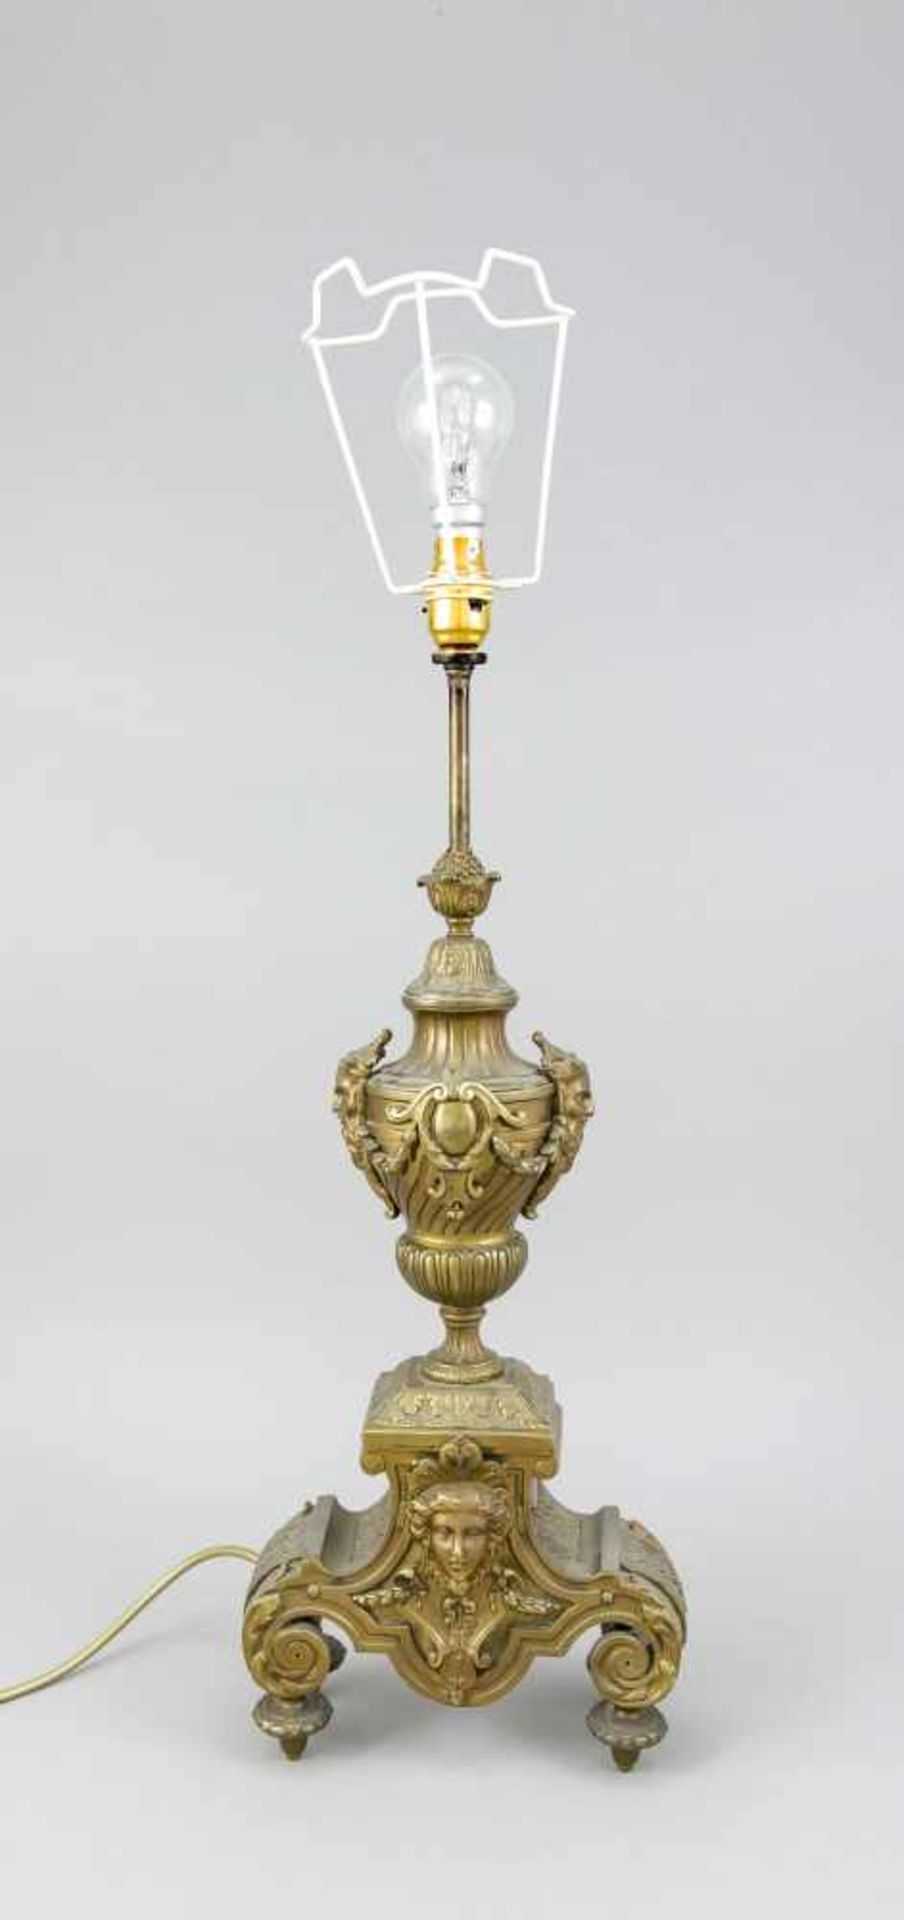 Als Lampe montierter Kaminaufsatz, Bronze, wohl England, Ende 19. Jh., ohne Lampenschirm,H. 70